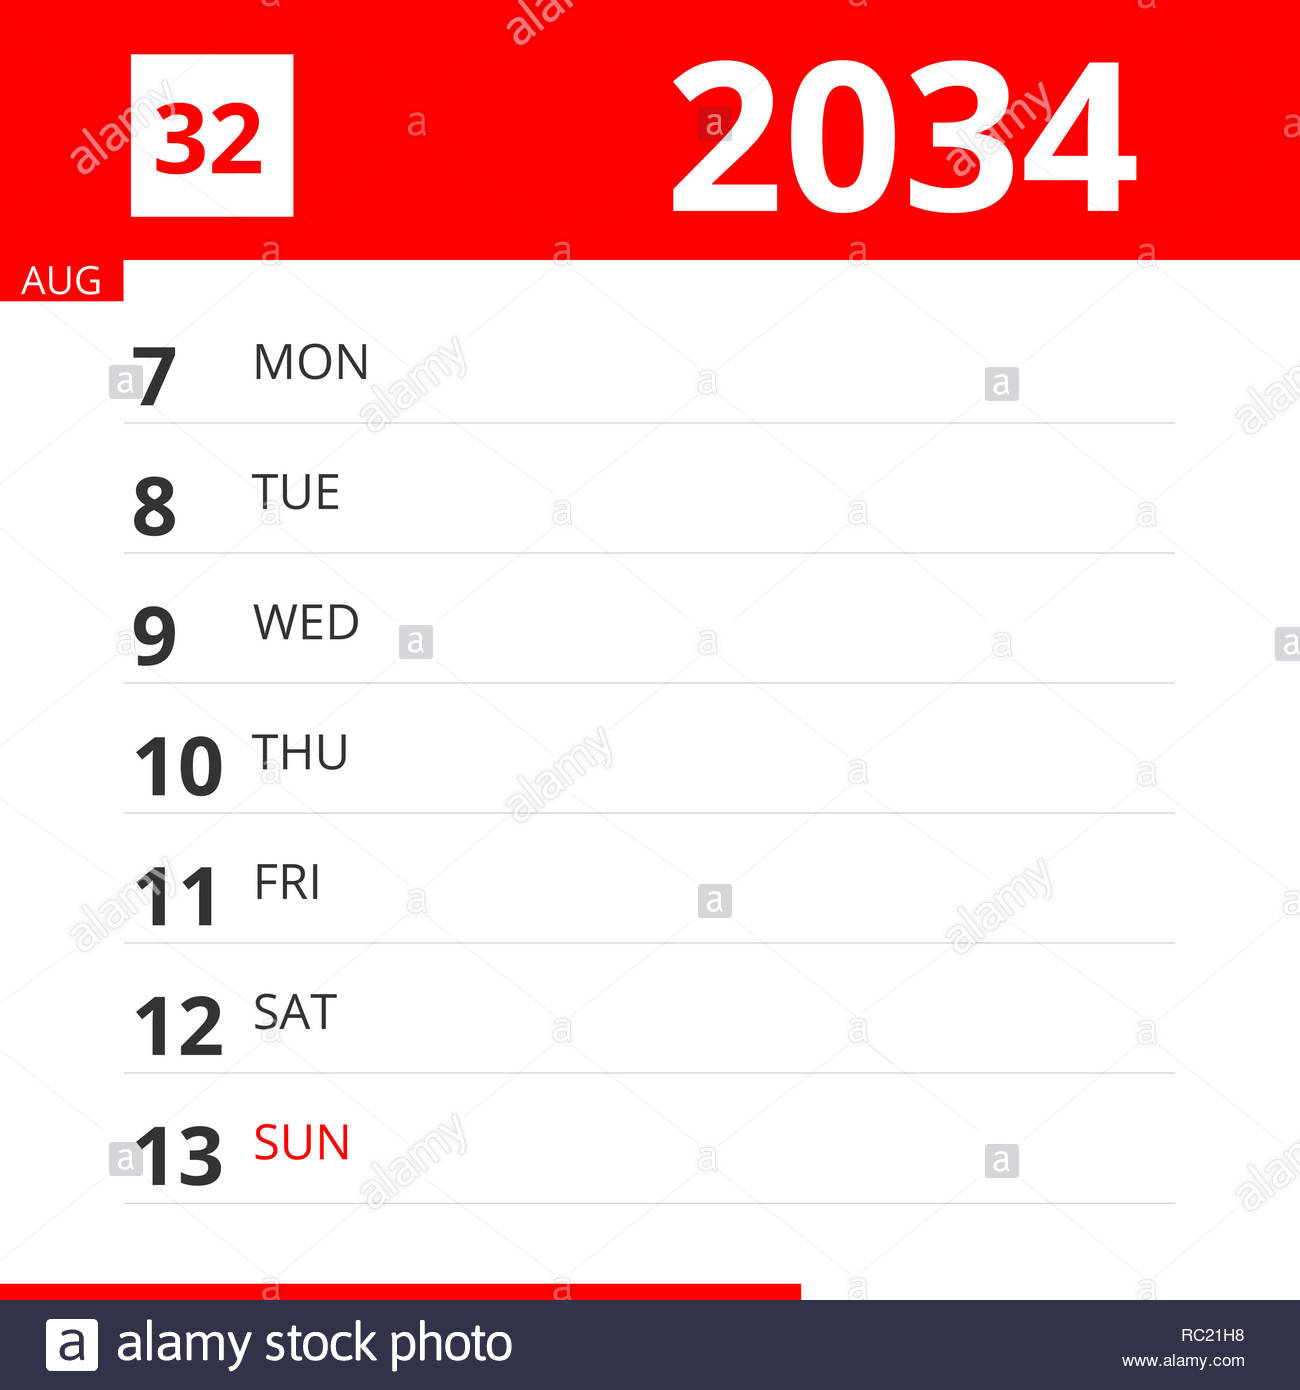 Calendar Planner For Week 32 In 2034, Ends August 13, 2034